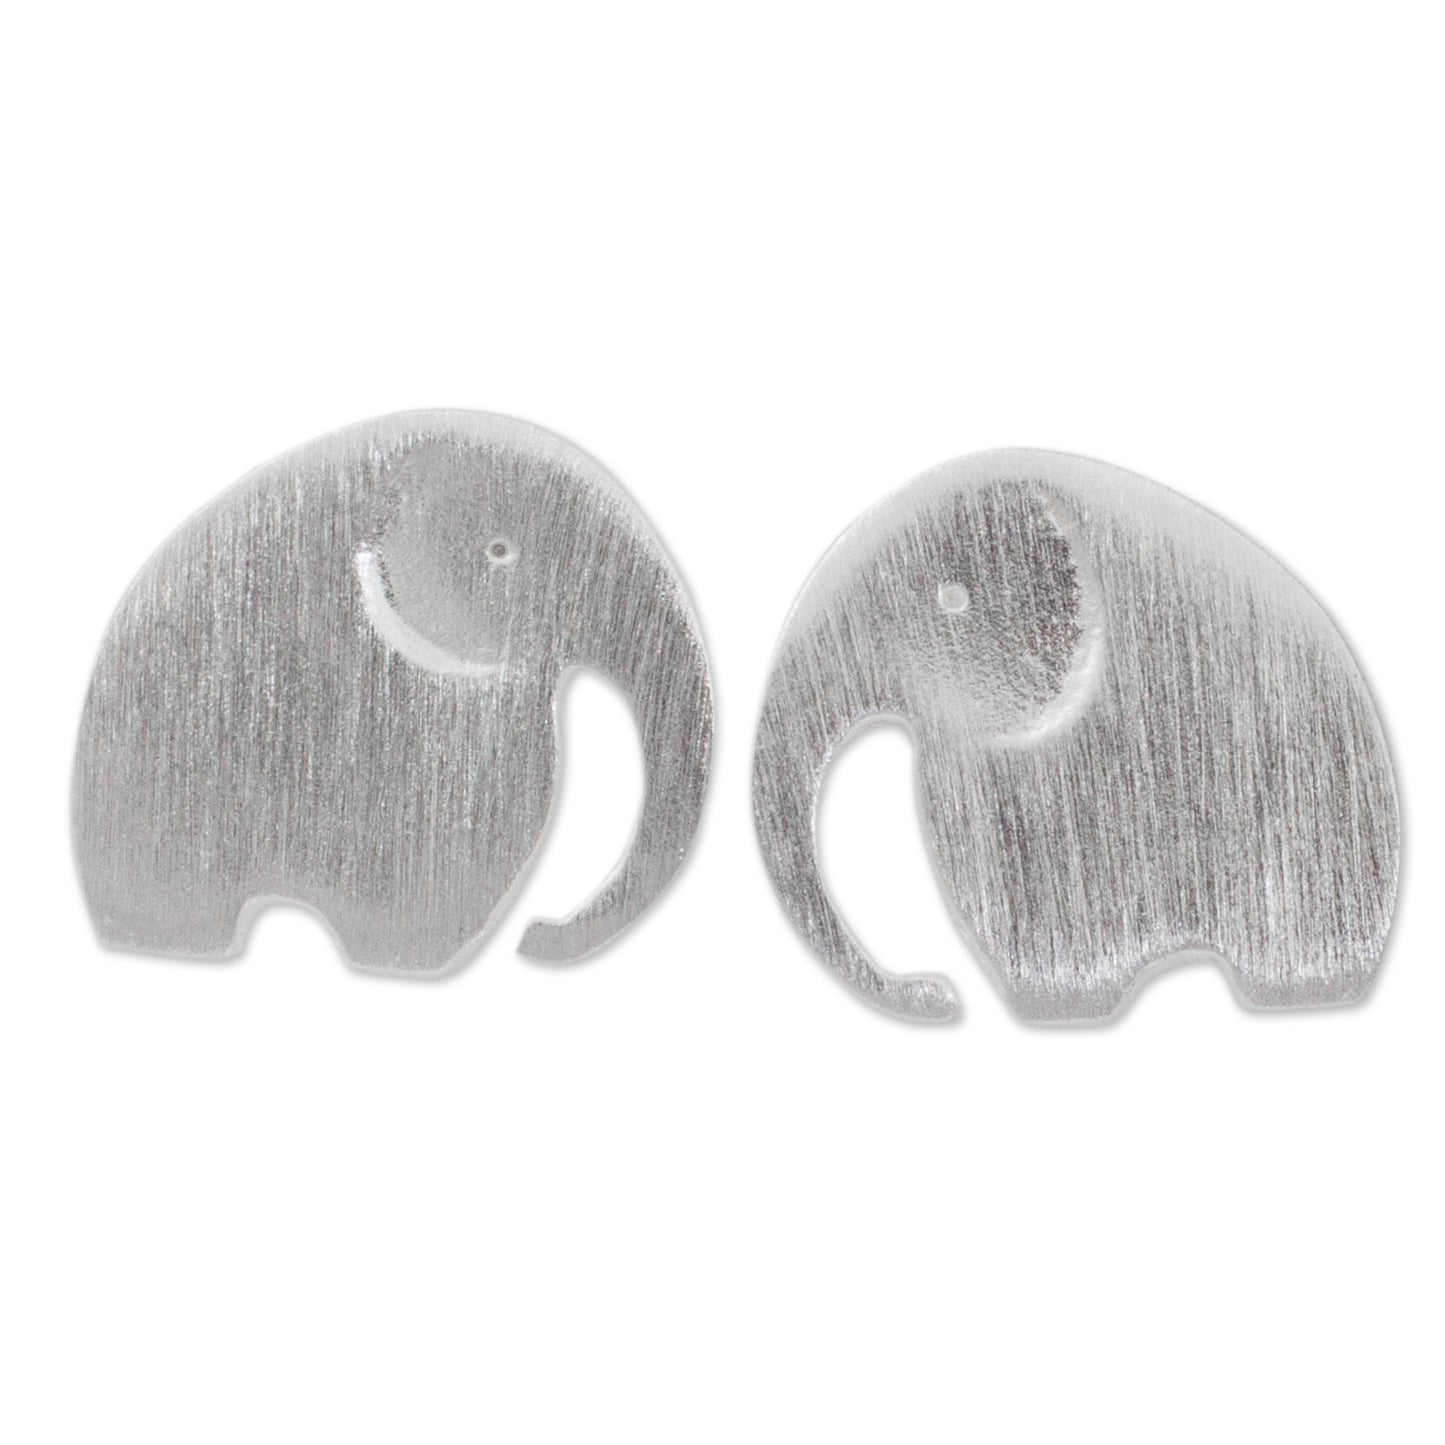 Elephant Fun Stud Earrings with Elephant Motif in 925 Sterling Silver